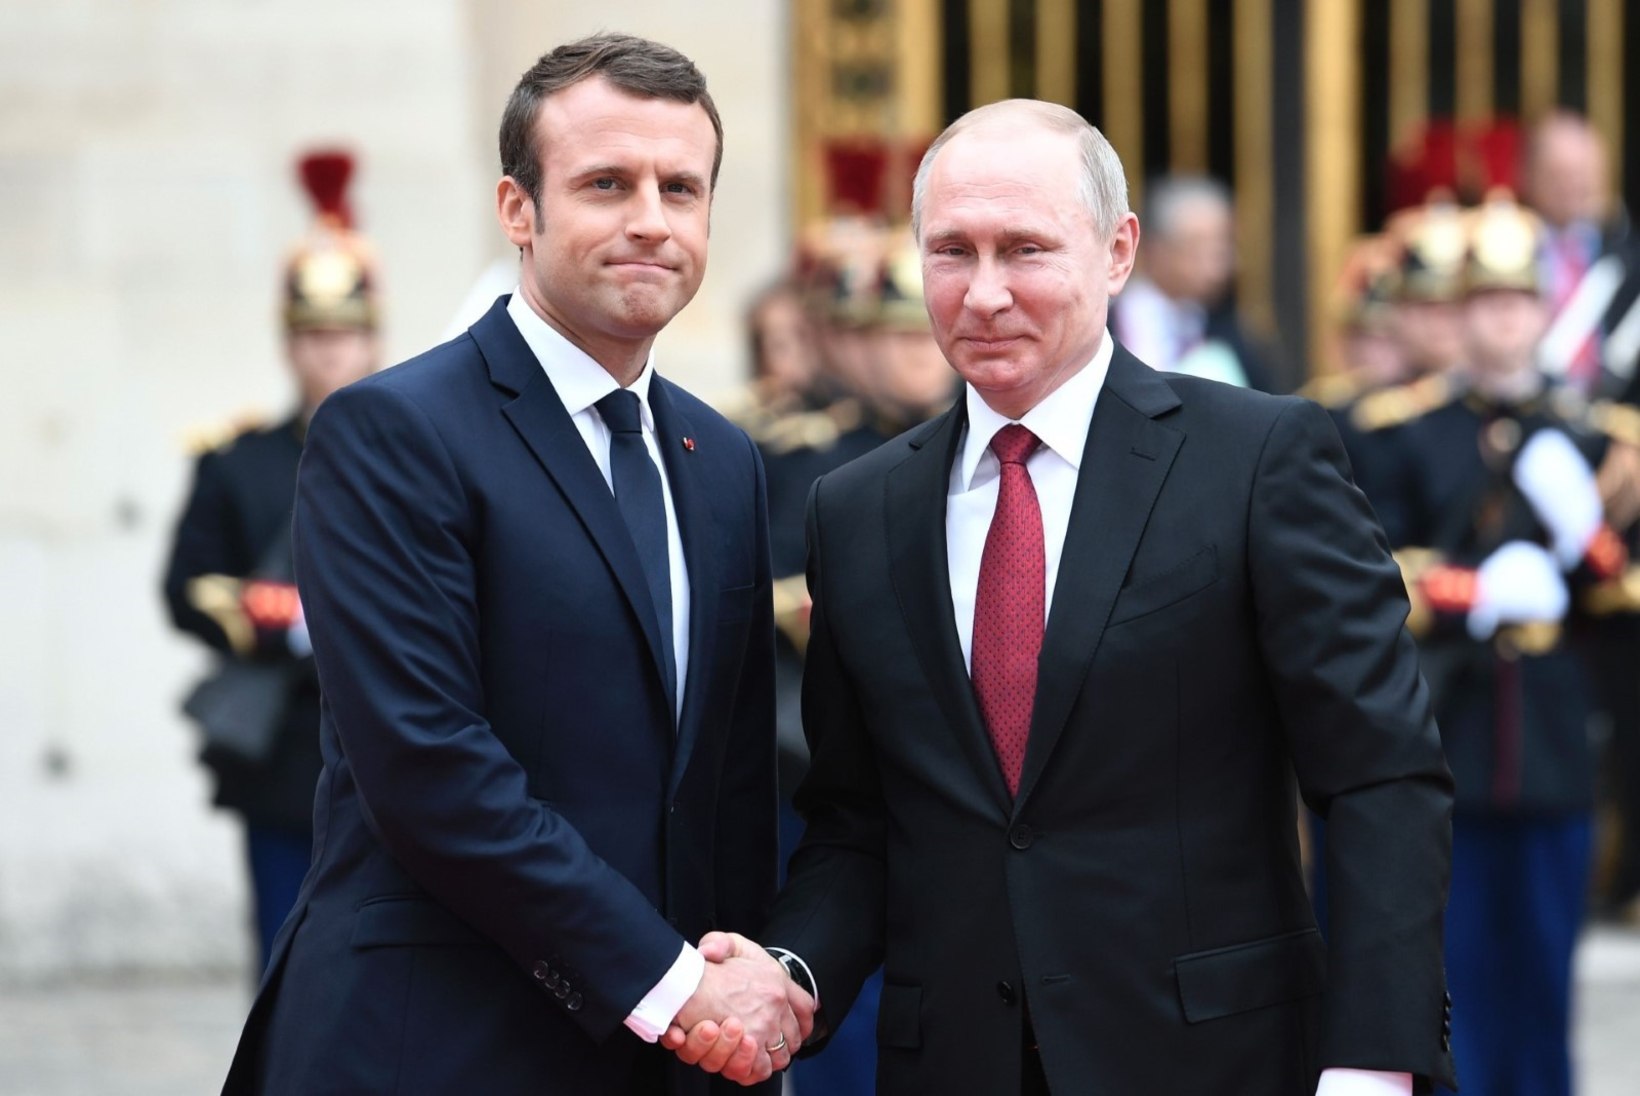 LINK PILDILE | Charlie Hebdo kujutab Macroni Putini kätt hammustava koerana